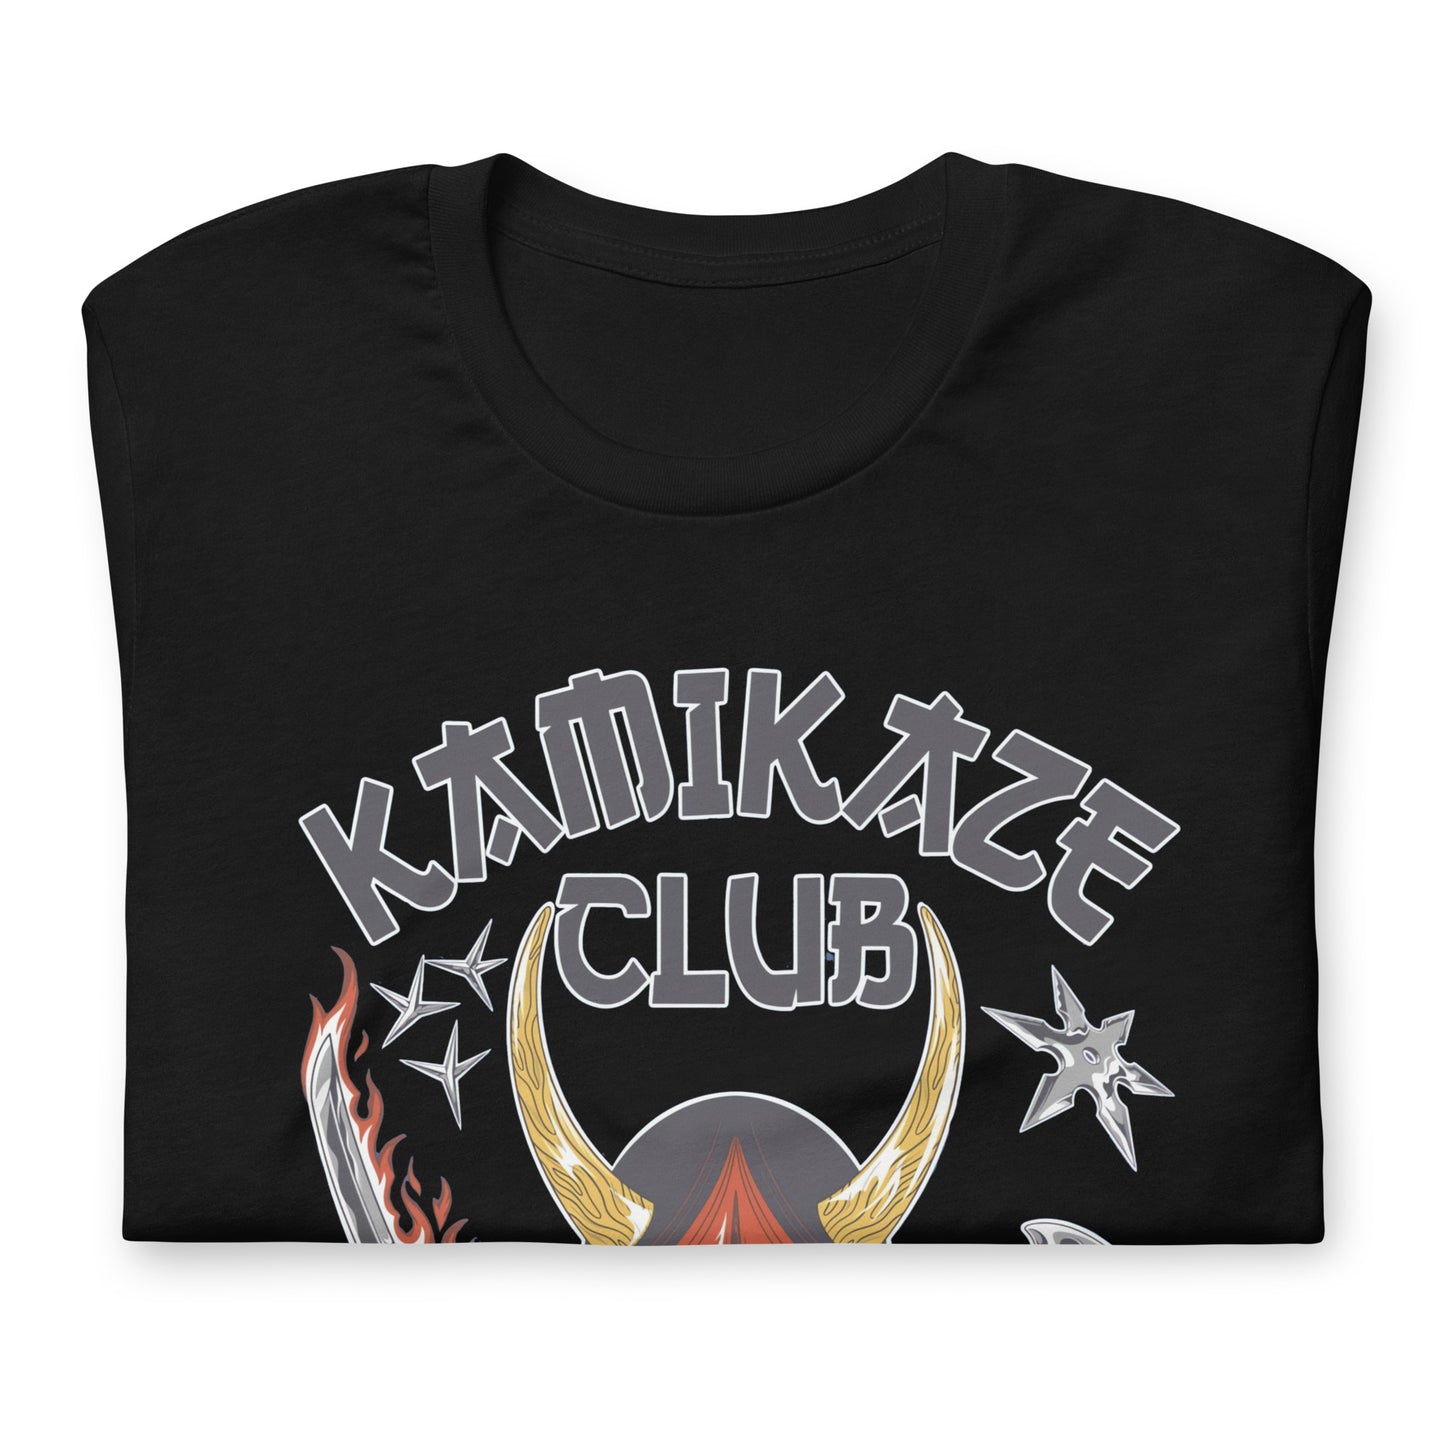 ¡Compra el mejor merchandising en Superstar! Encuentra diseños únicos y de alta calidad en playeras, Camiseta Kamikaze Club